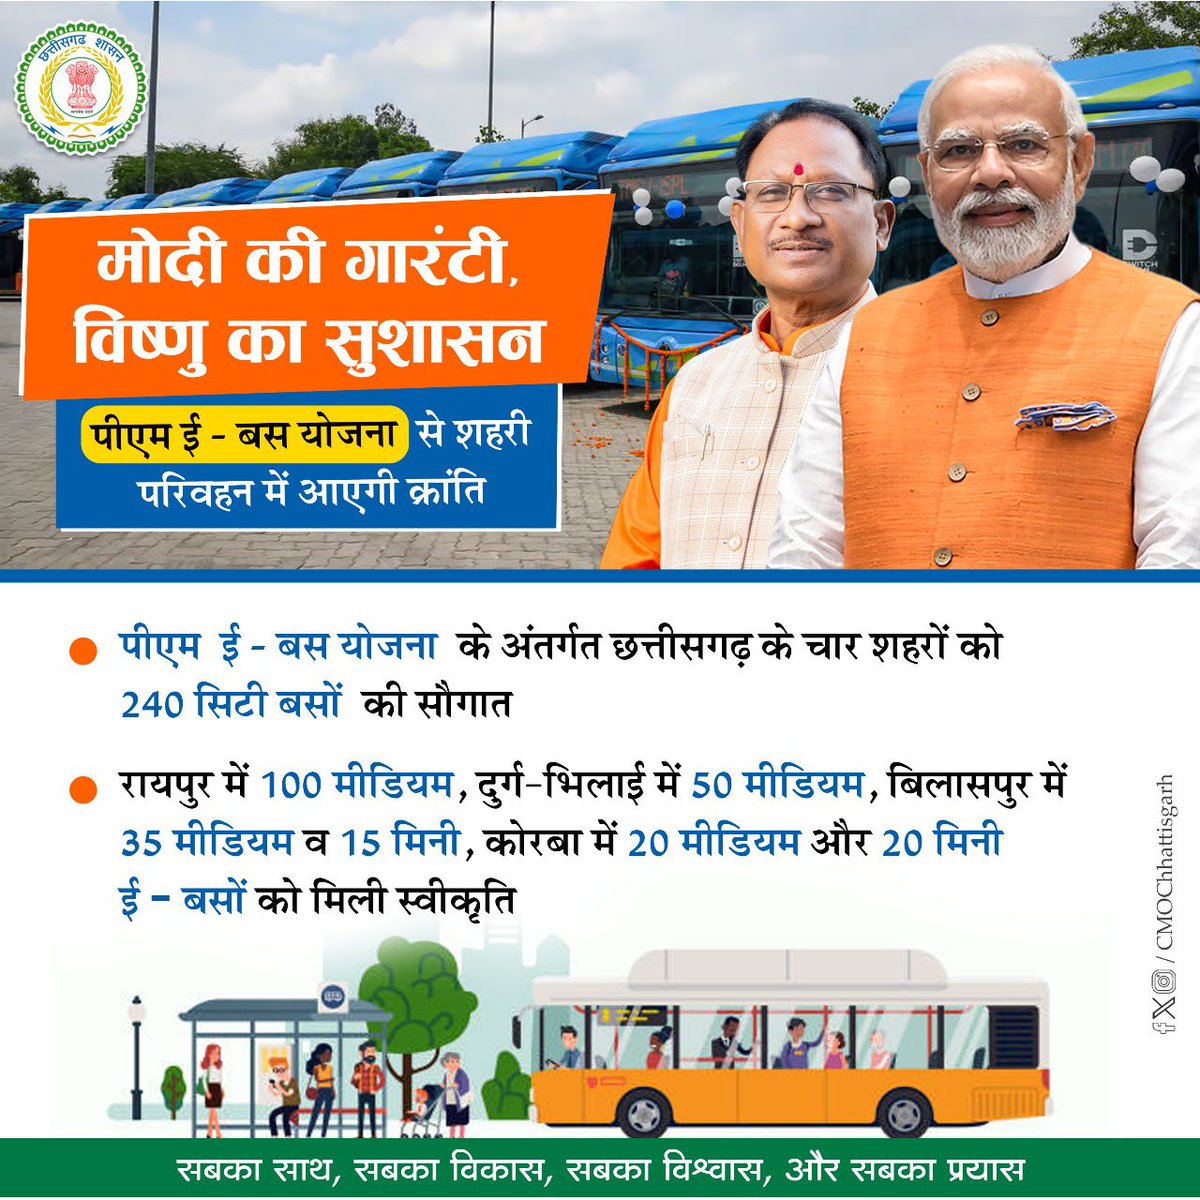 पीएम ई-बस योजना से पर्यावरण सुरक्षा के साथ शहरी परिवहन में आएगी क्रांति. #PMEBusYojna @PMOIndia